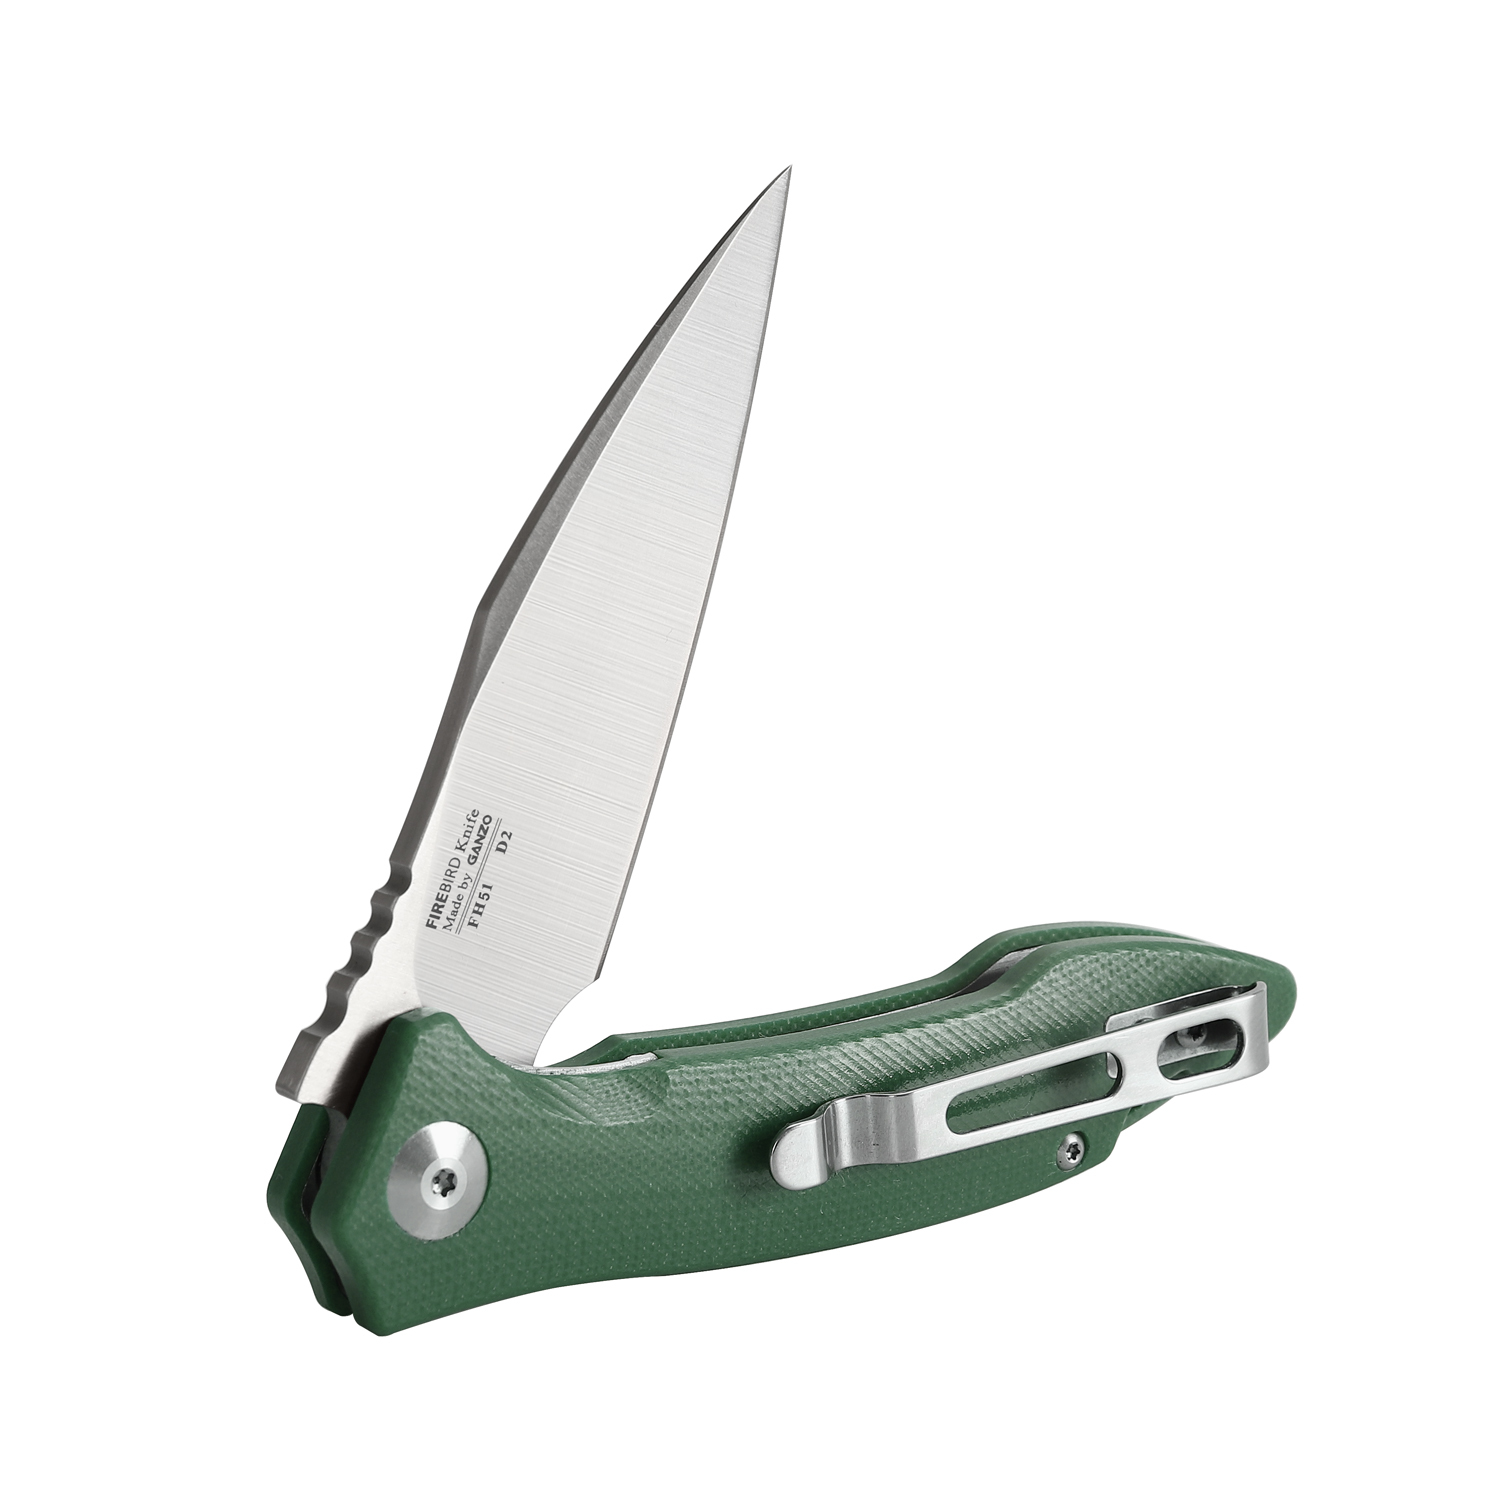  Нож Firebird FH51-GB, зеленый, FH51-GB по цене 4230.0 руб .